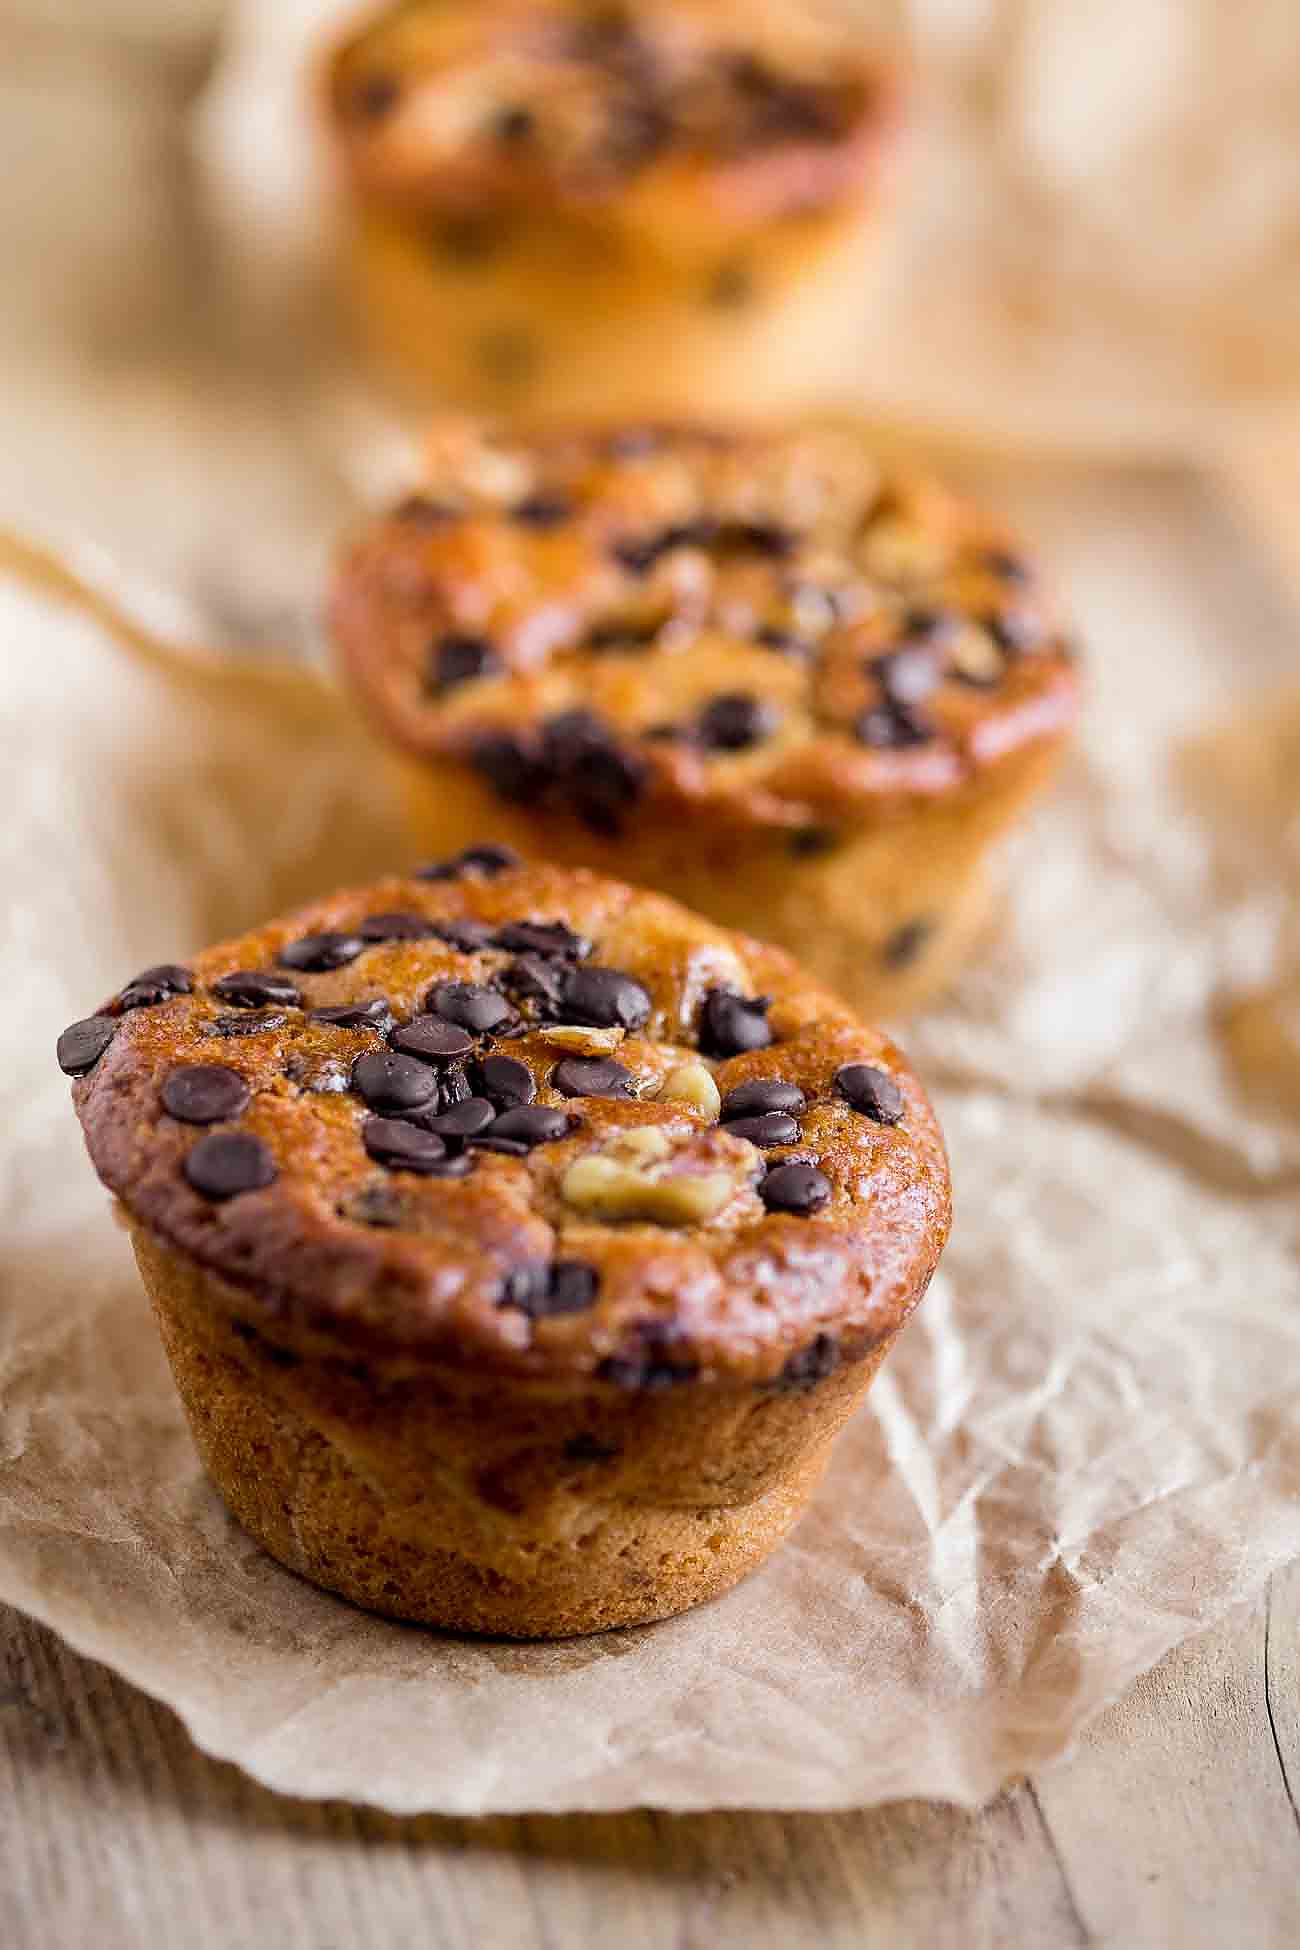 Eggless Banana Walnut Chocolate Chip Muffin Recipe-Vegan Options